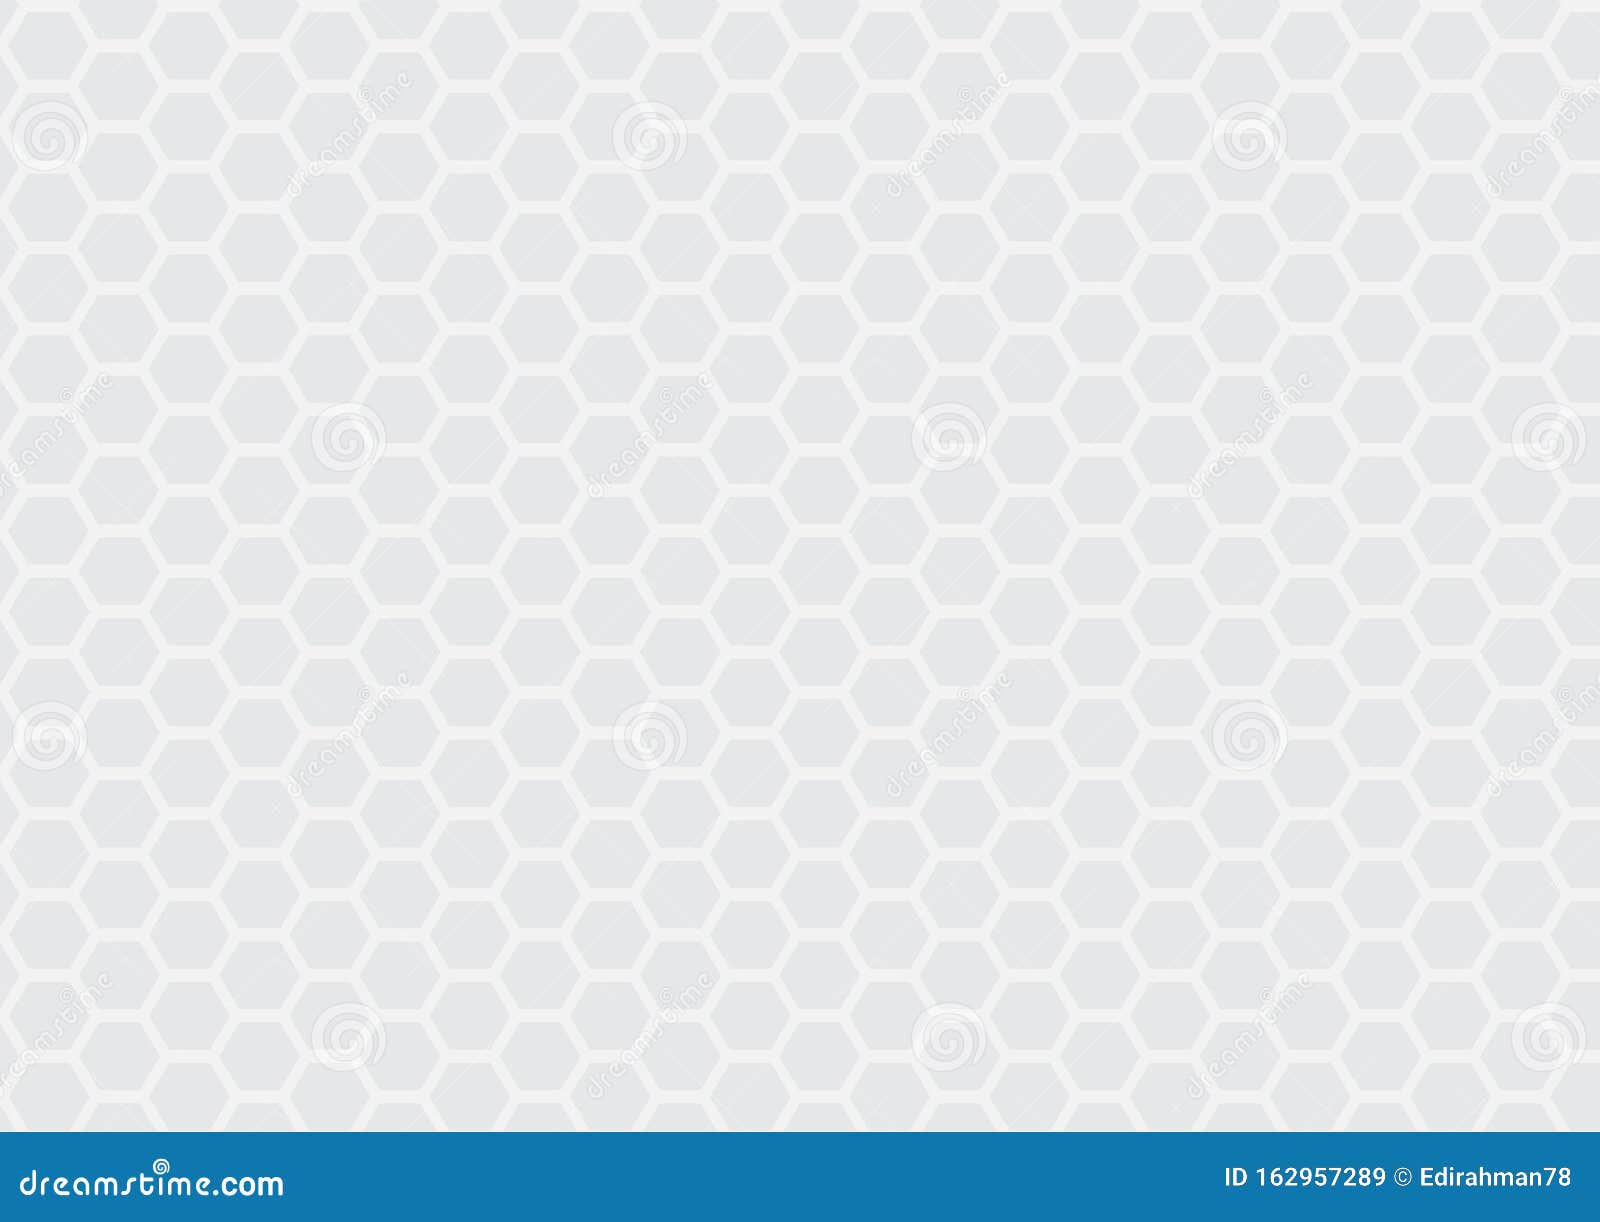 白色灰色蜂窝壁纸库存例证 插画包括有颜色 解决方法 视窗 墙纸 灰色 六角形 蜂窝